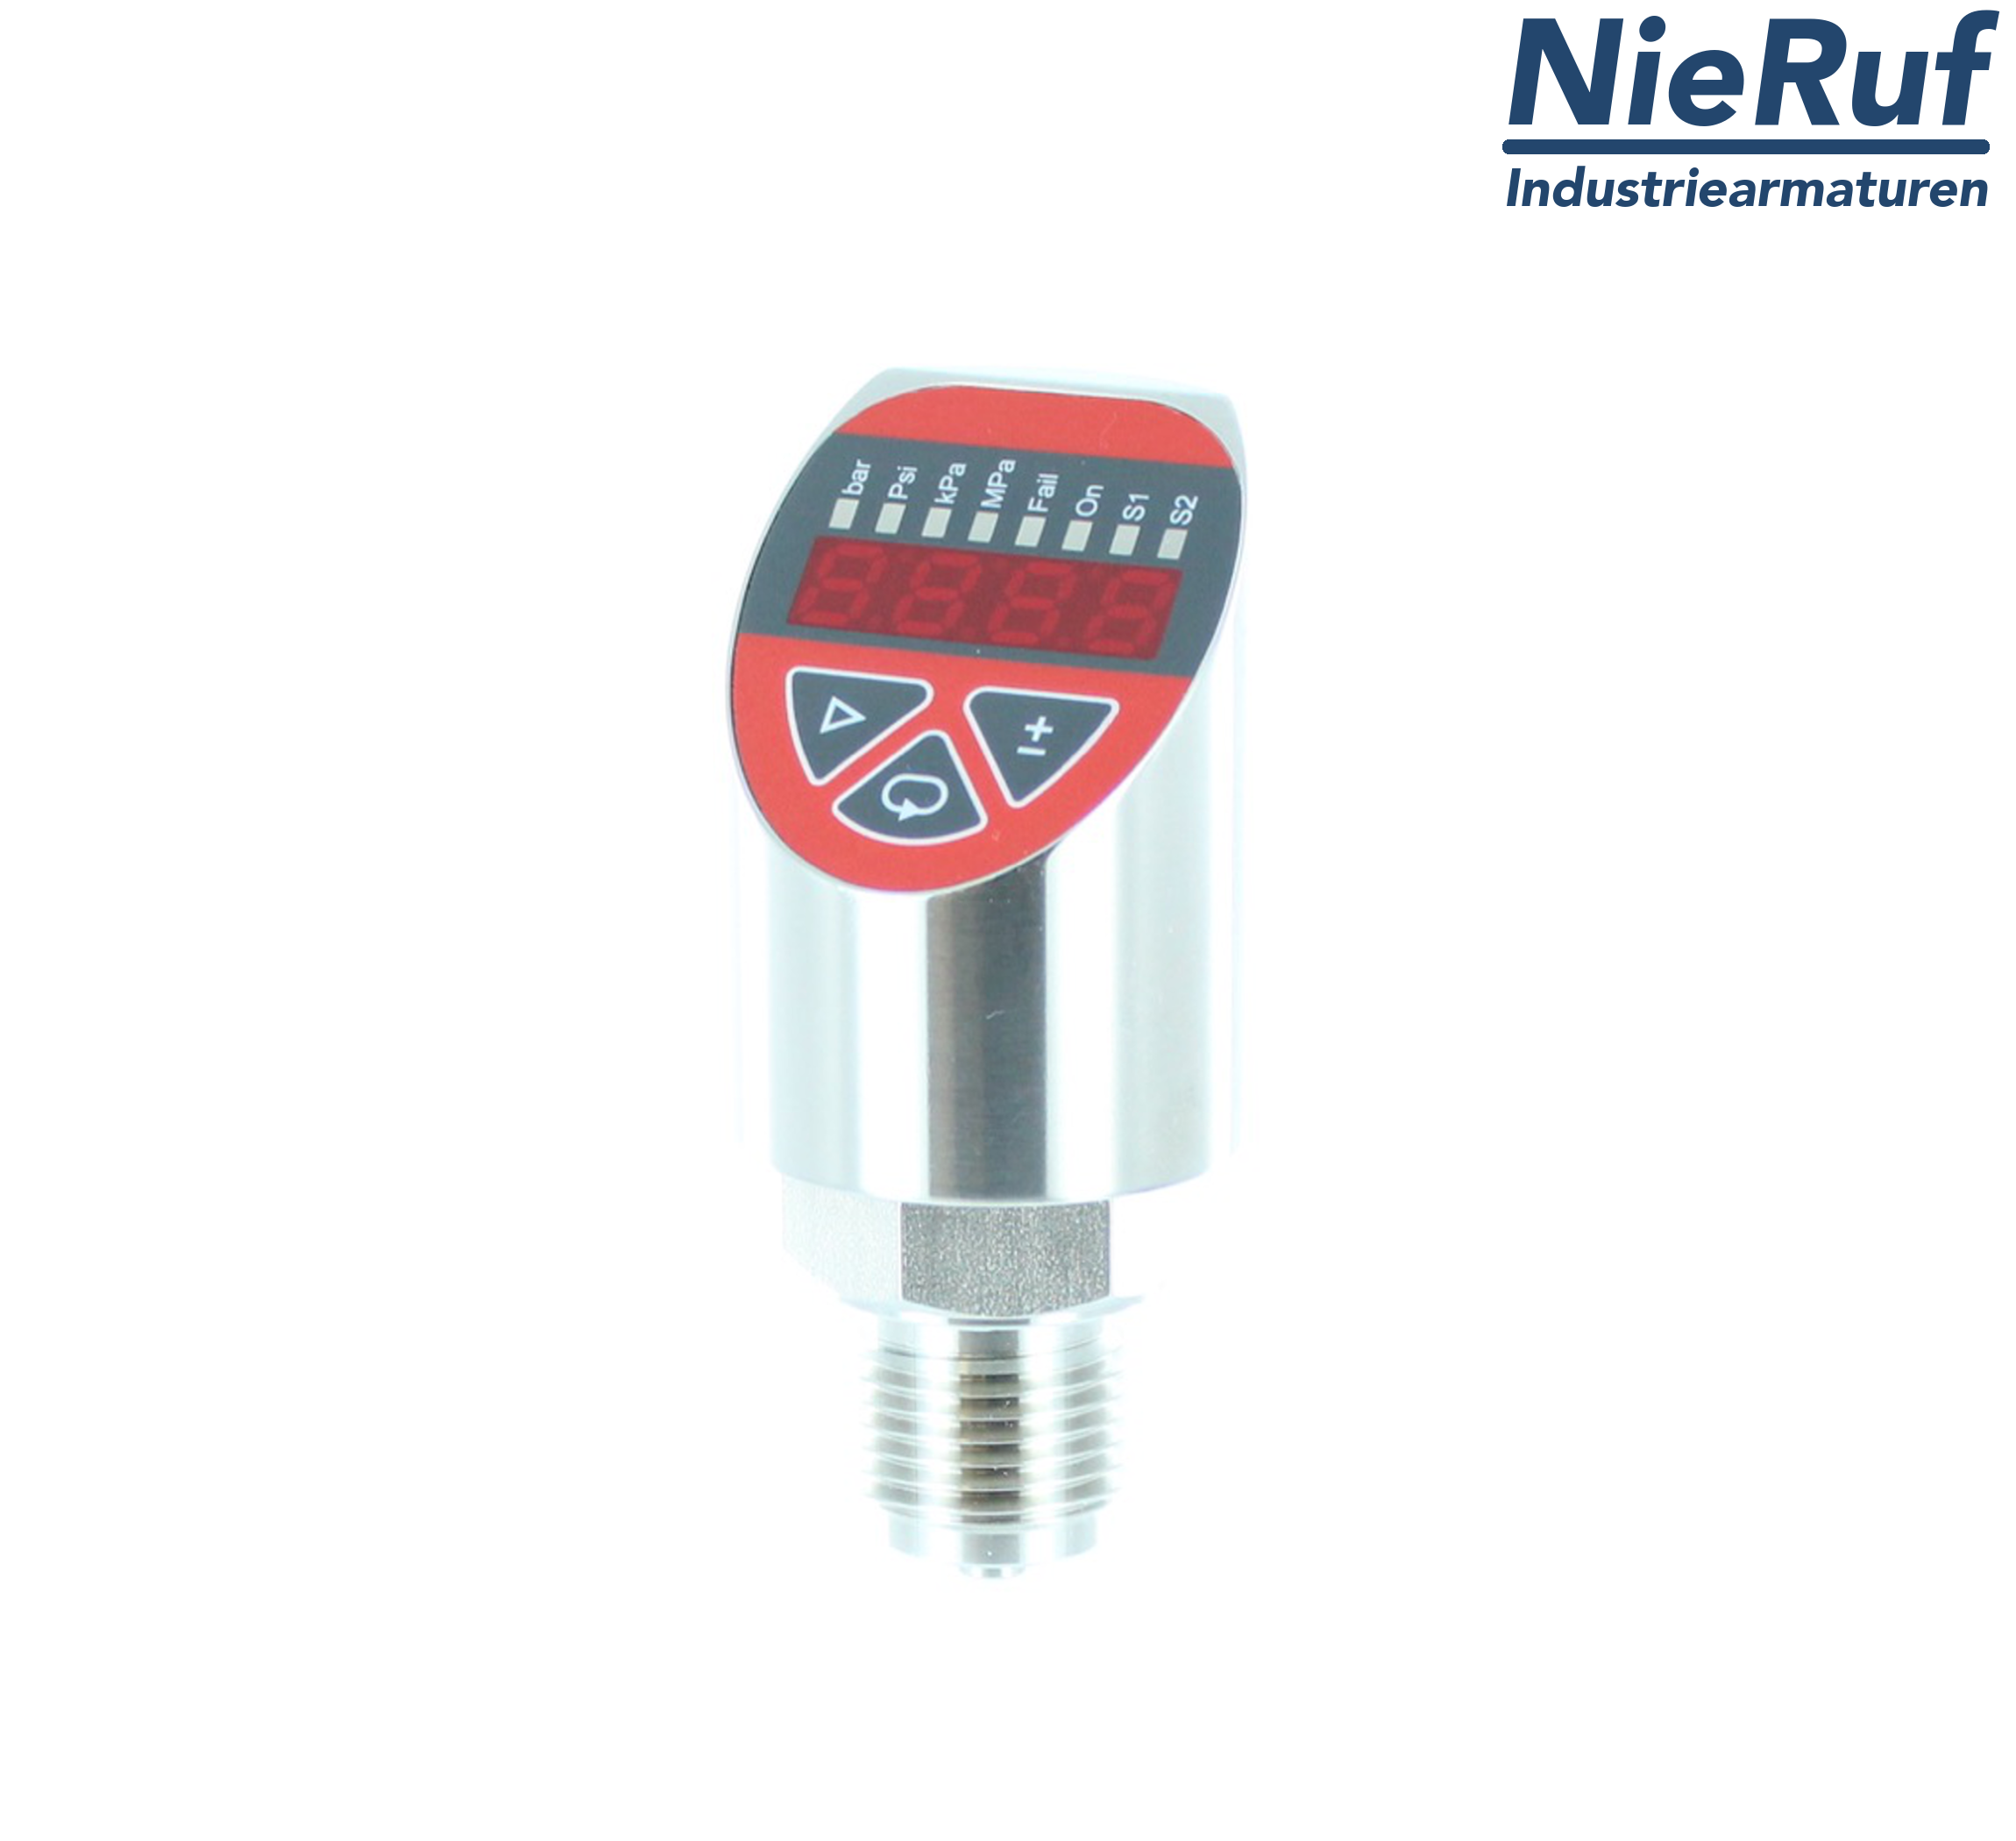 digital pressure sensor G 1/4" B 4-wire: 1xPNP, 1x4 - 20mA, Desina FPM 0,0 - 320,0 bar